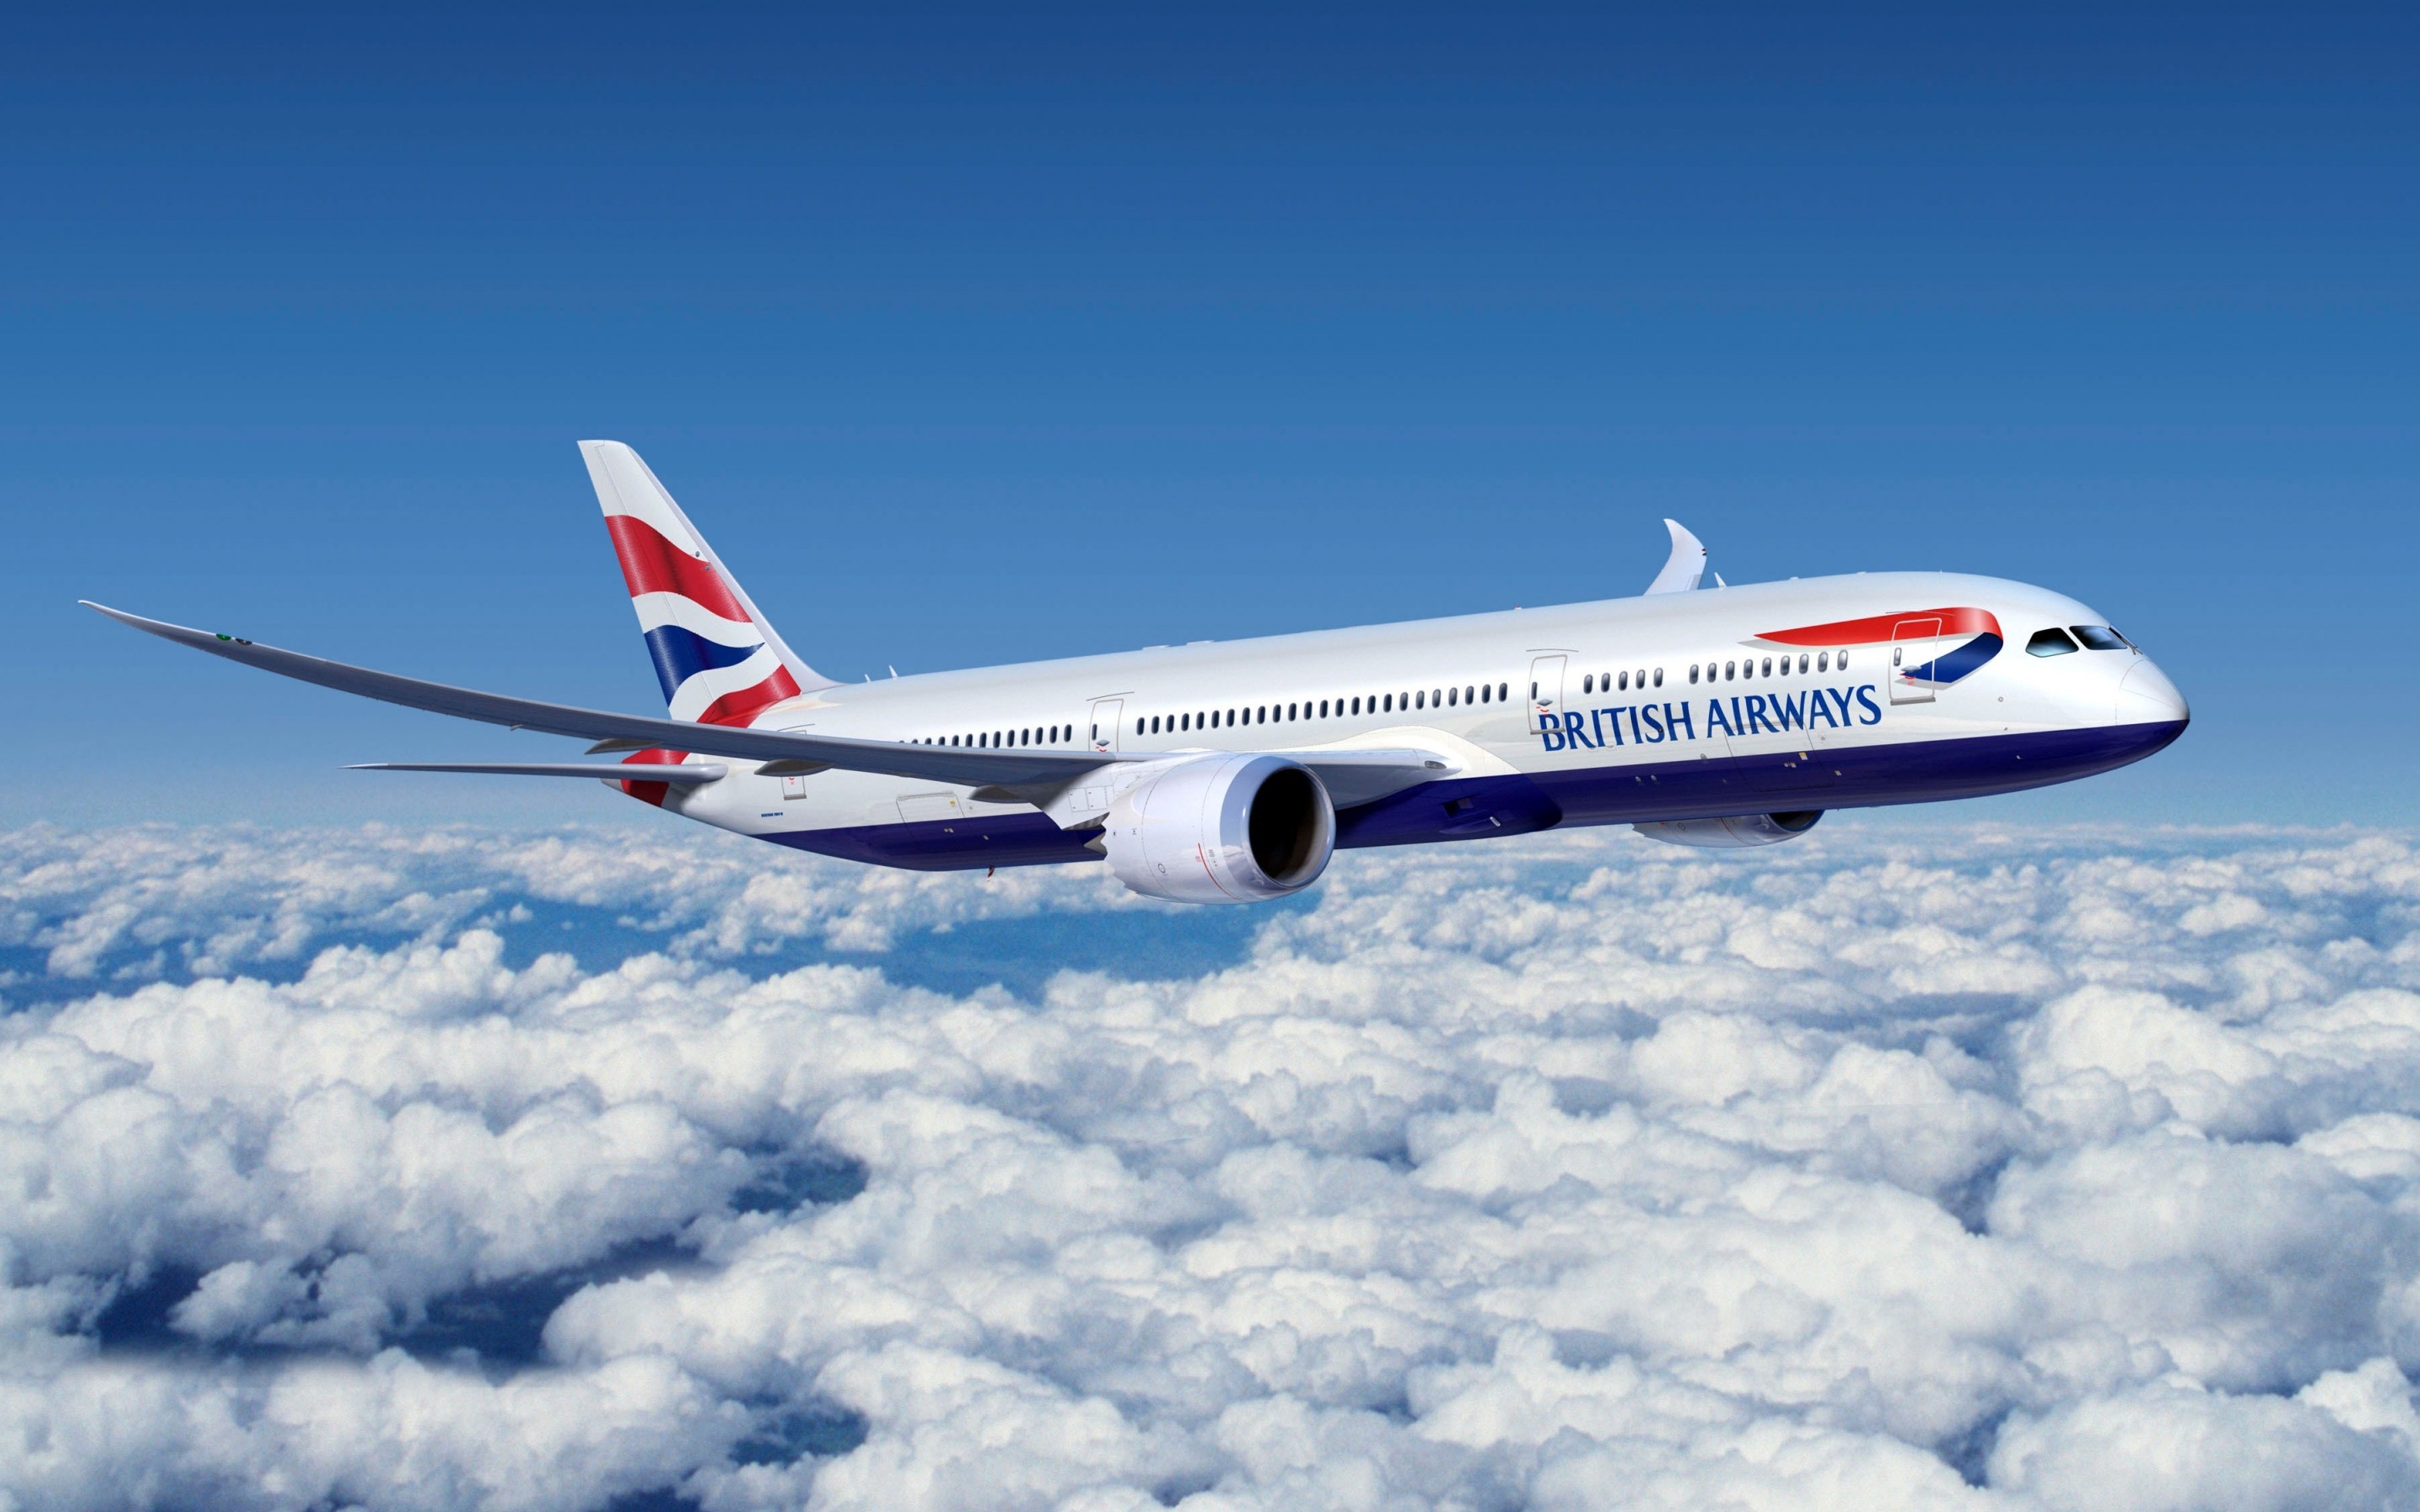 Boeing 777 British Airways for 2880 x 1800 Retina Display resolution